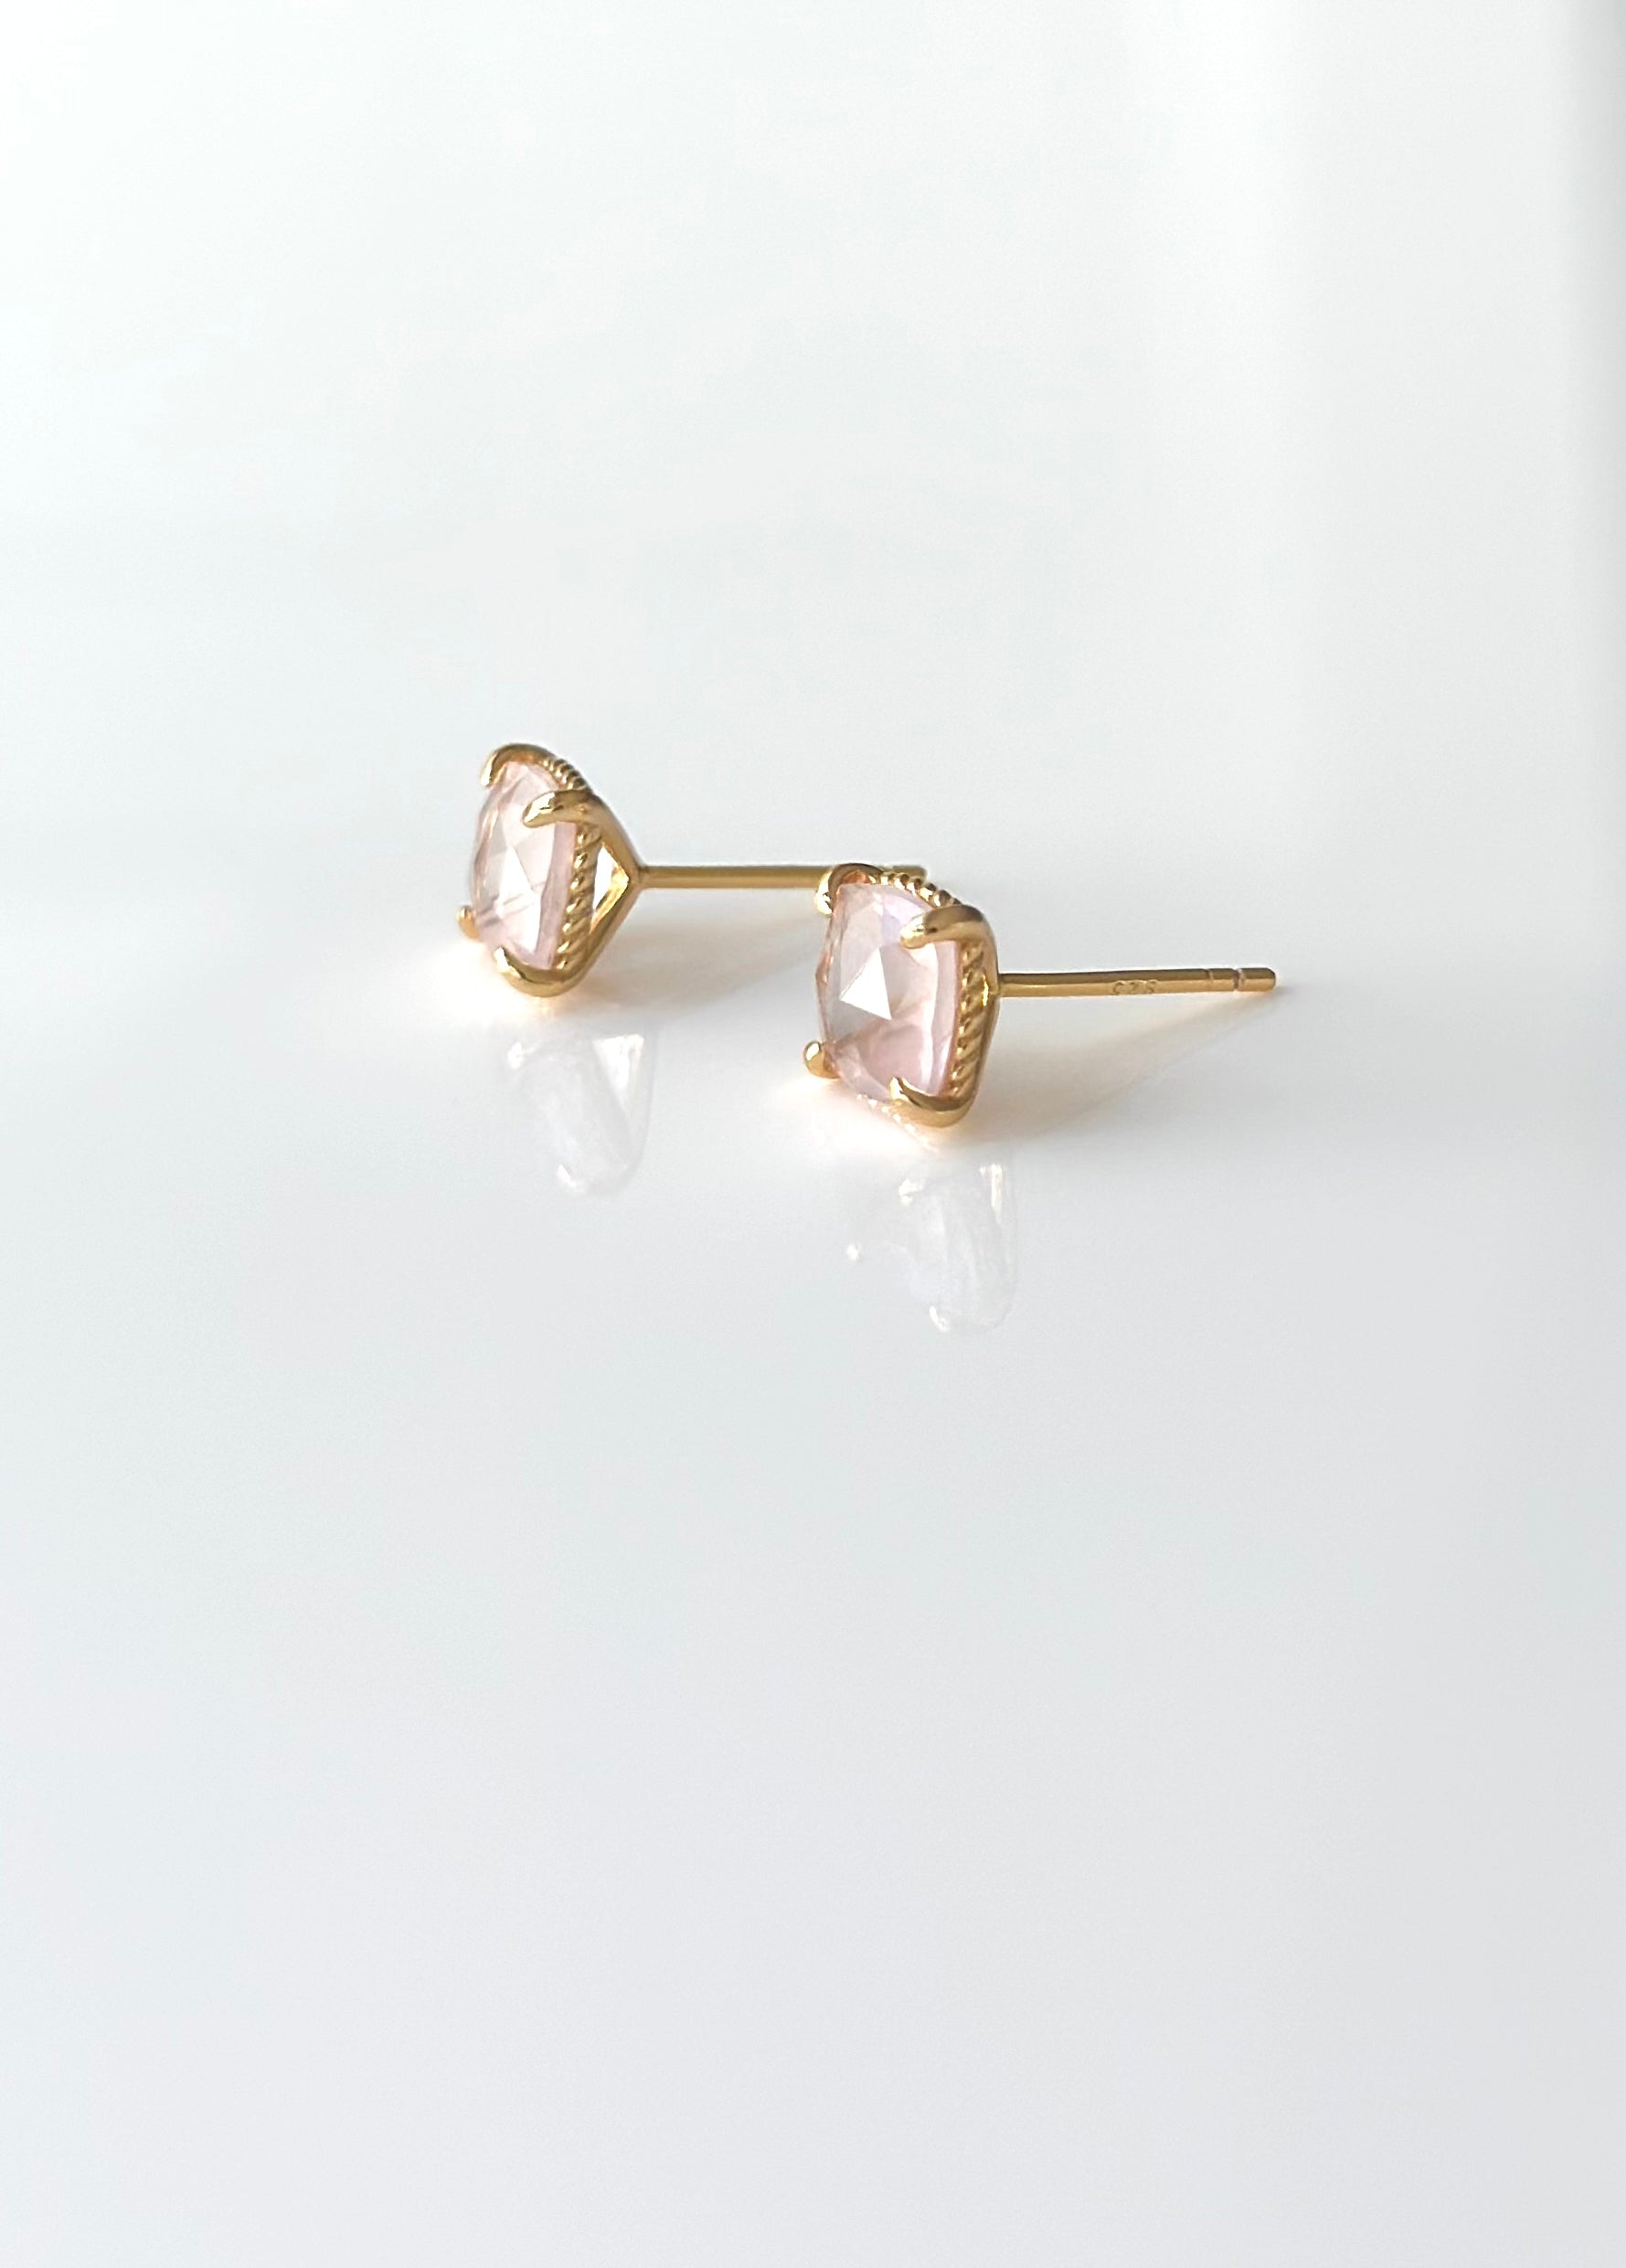 Korean Crystal Flower Earrings for Women Luxury Design Sense Elegant  Earrings Wedding Jewelry Gifts - AliExpress